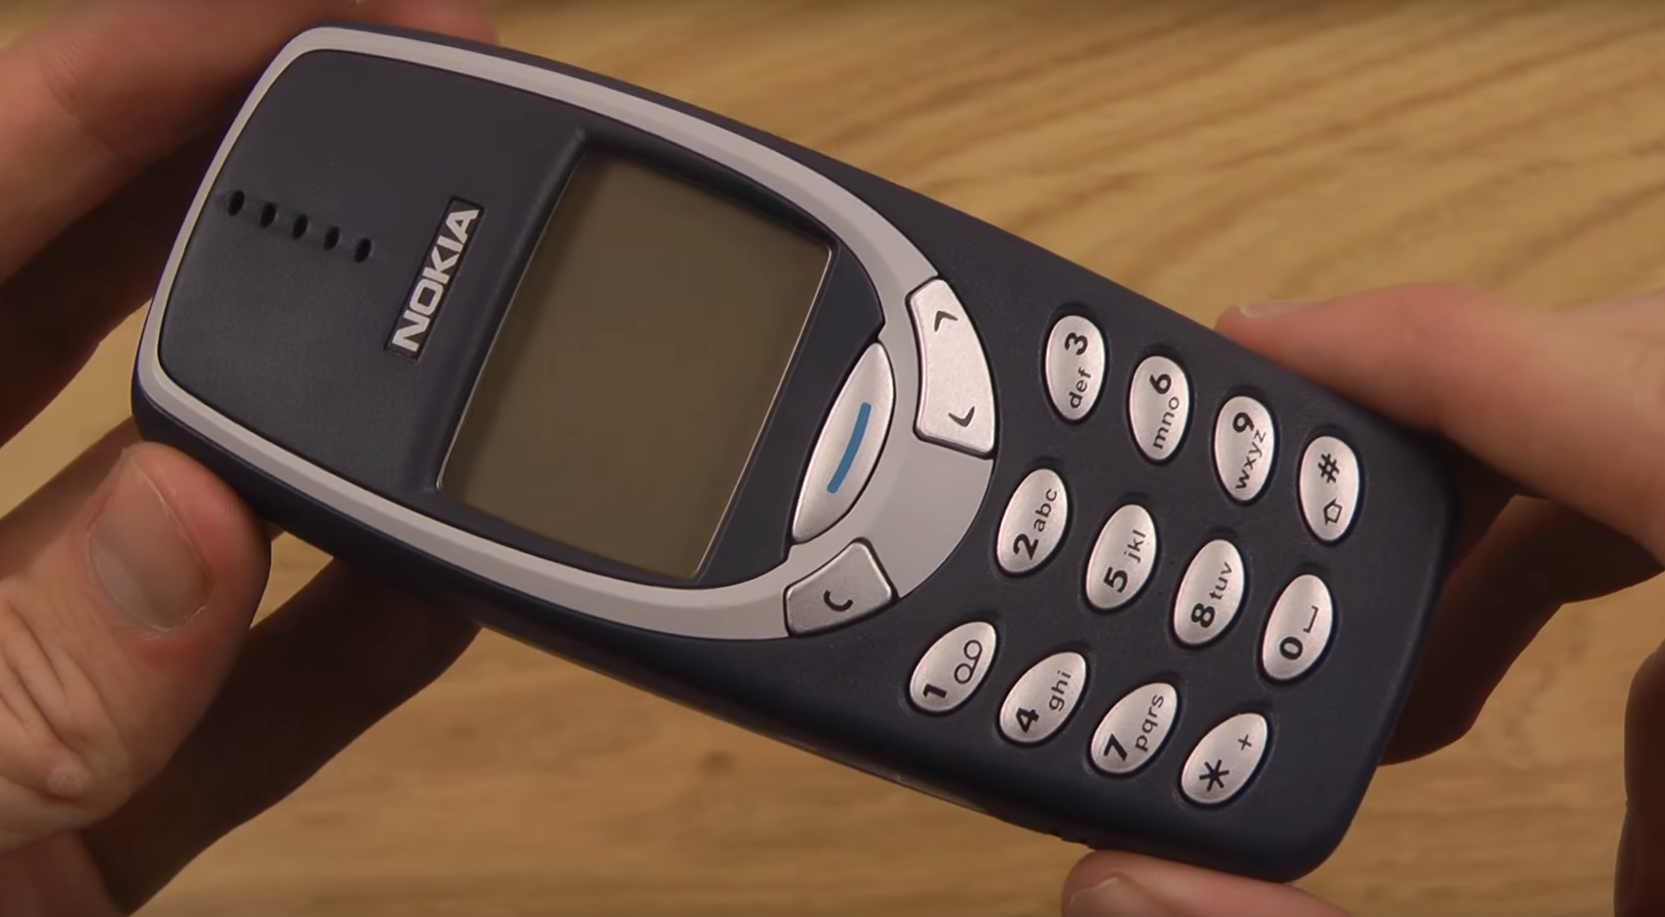 Le Nokia 3310 fait son grand retour.